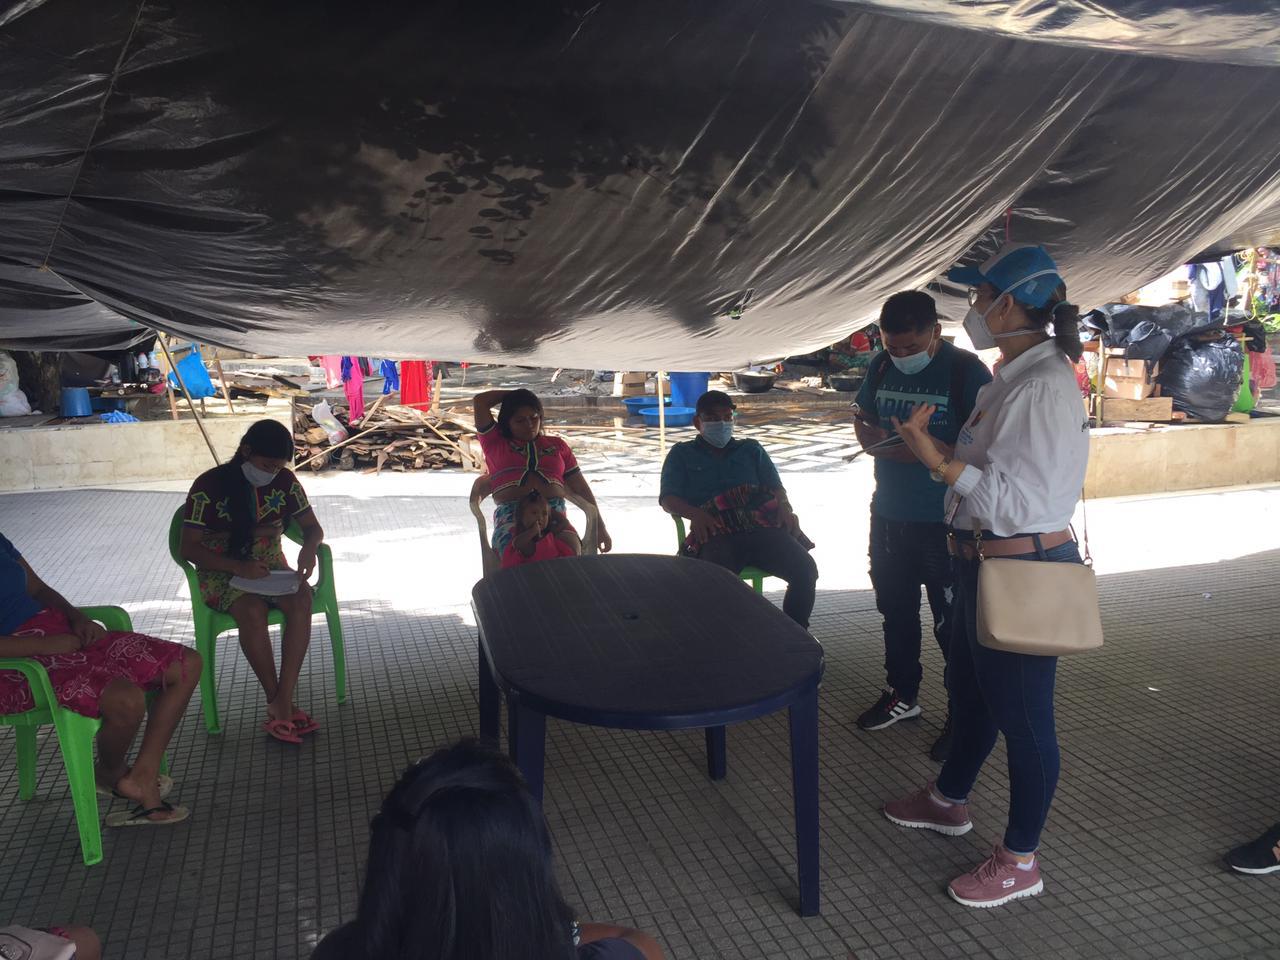 Adelantaron nueva jornada de atención integral con población indígena desplazada en Montería